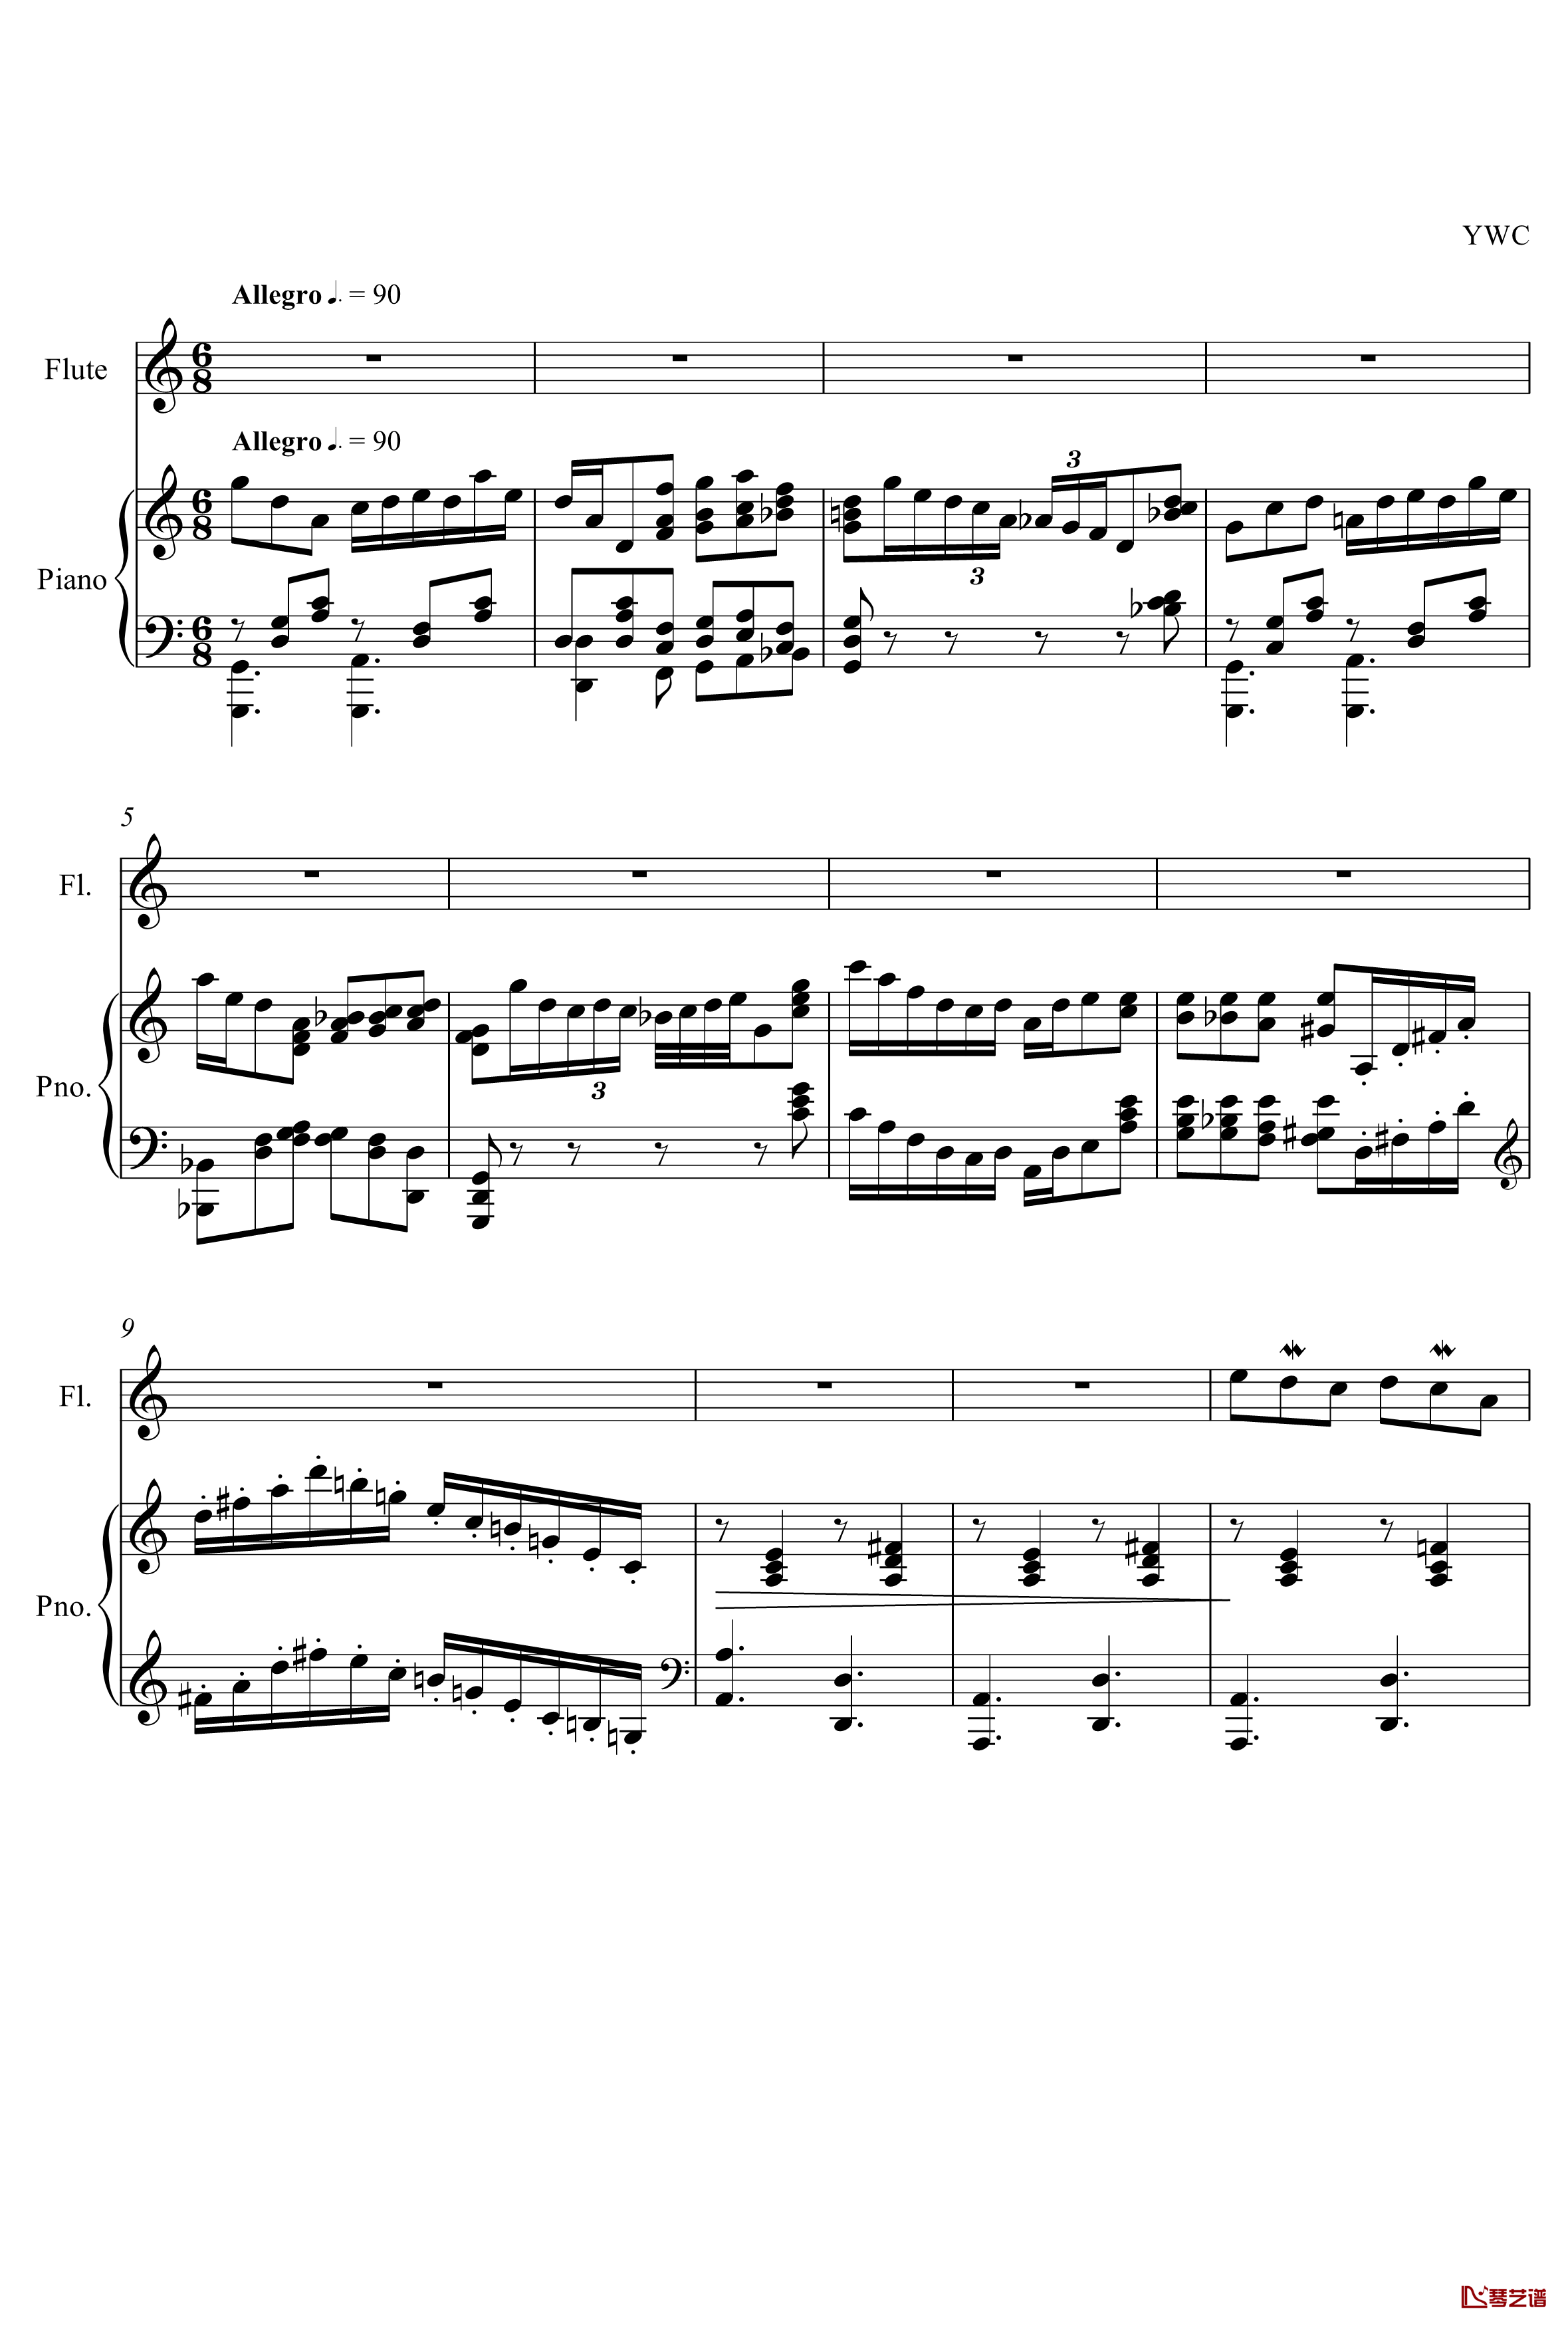 即兴曲3钢琴谱-yewwc1